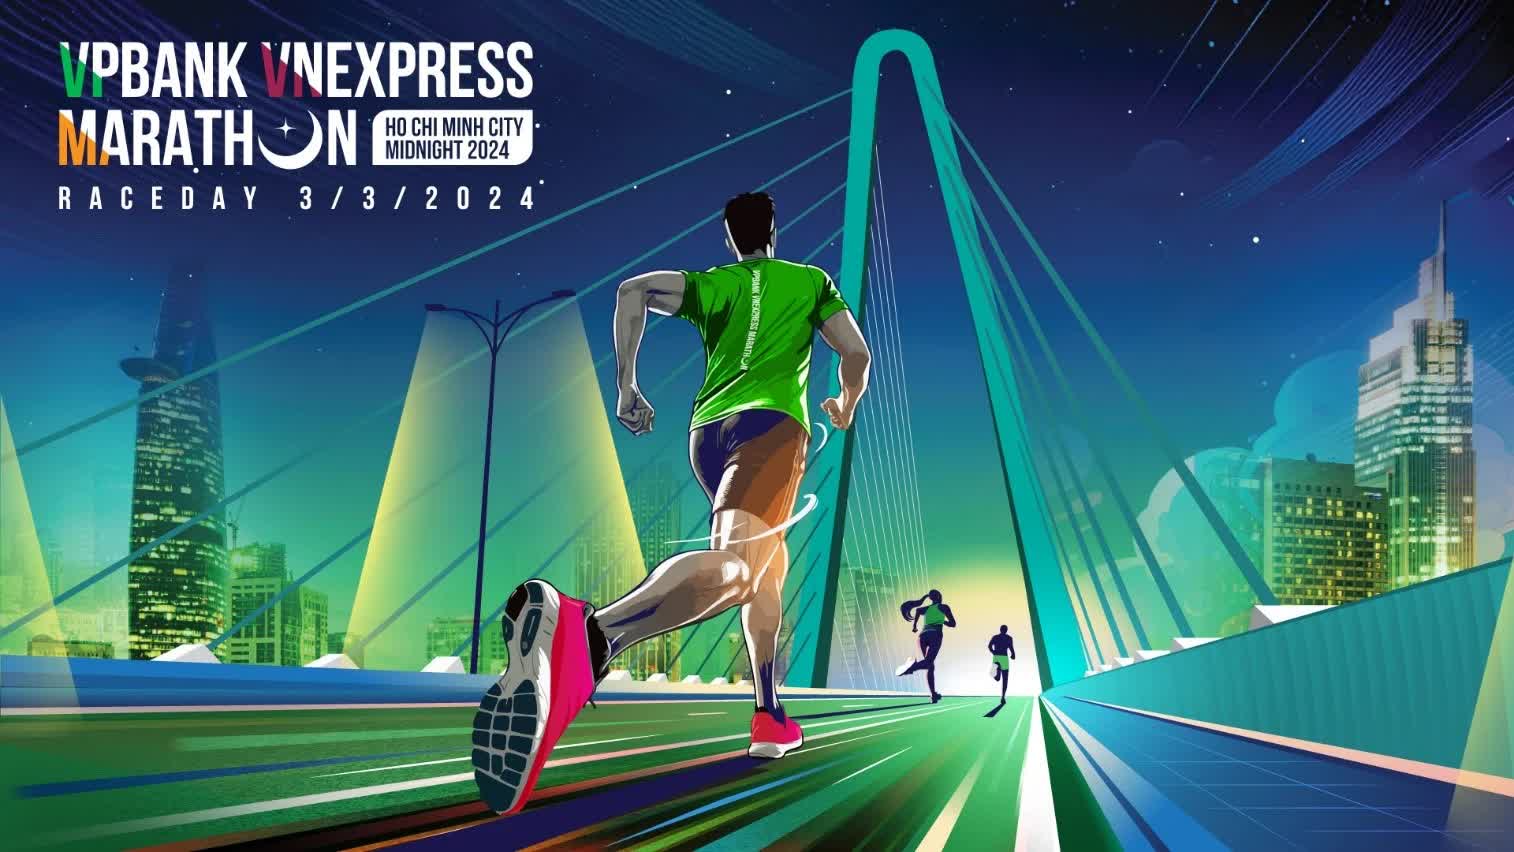 VnExpress Marathon Ho Chi Minh City Midnight 2024 trở lại với sự đồng hành của VPBank- Ảnh 1.